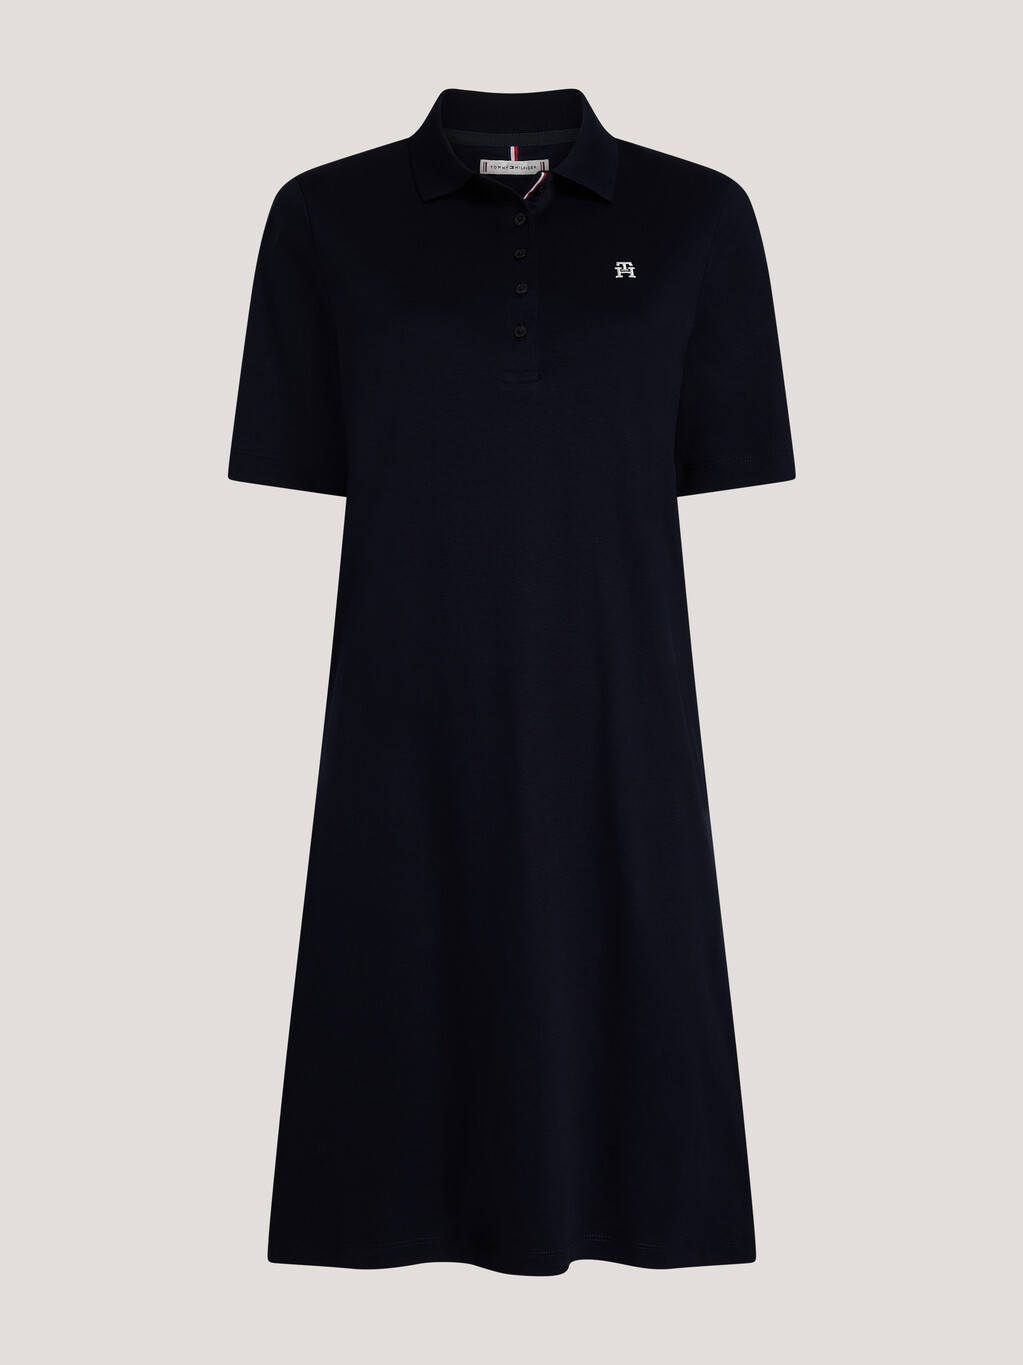 TH Monogram A Line Polo Dress, Desert Sky, hi-res